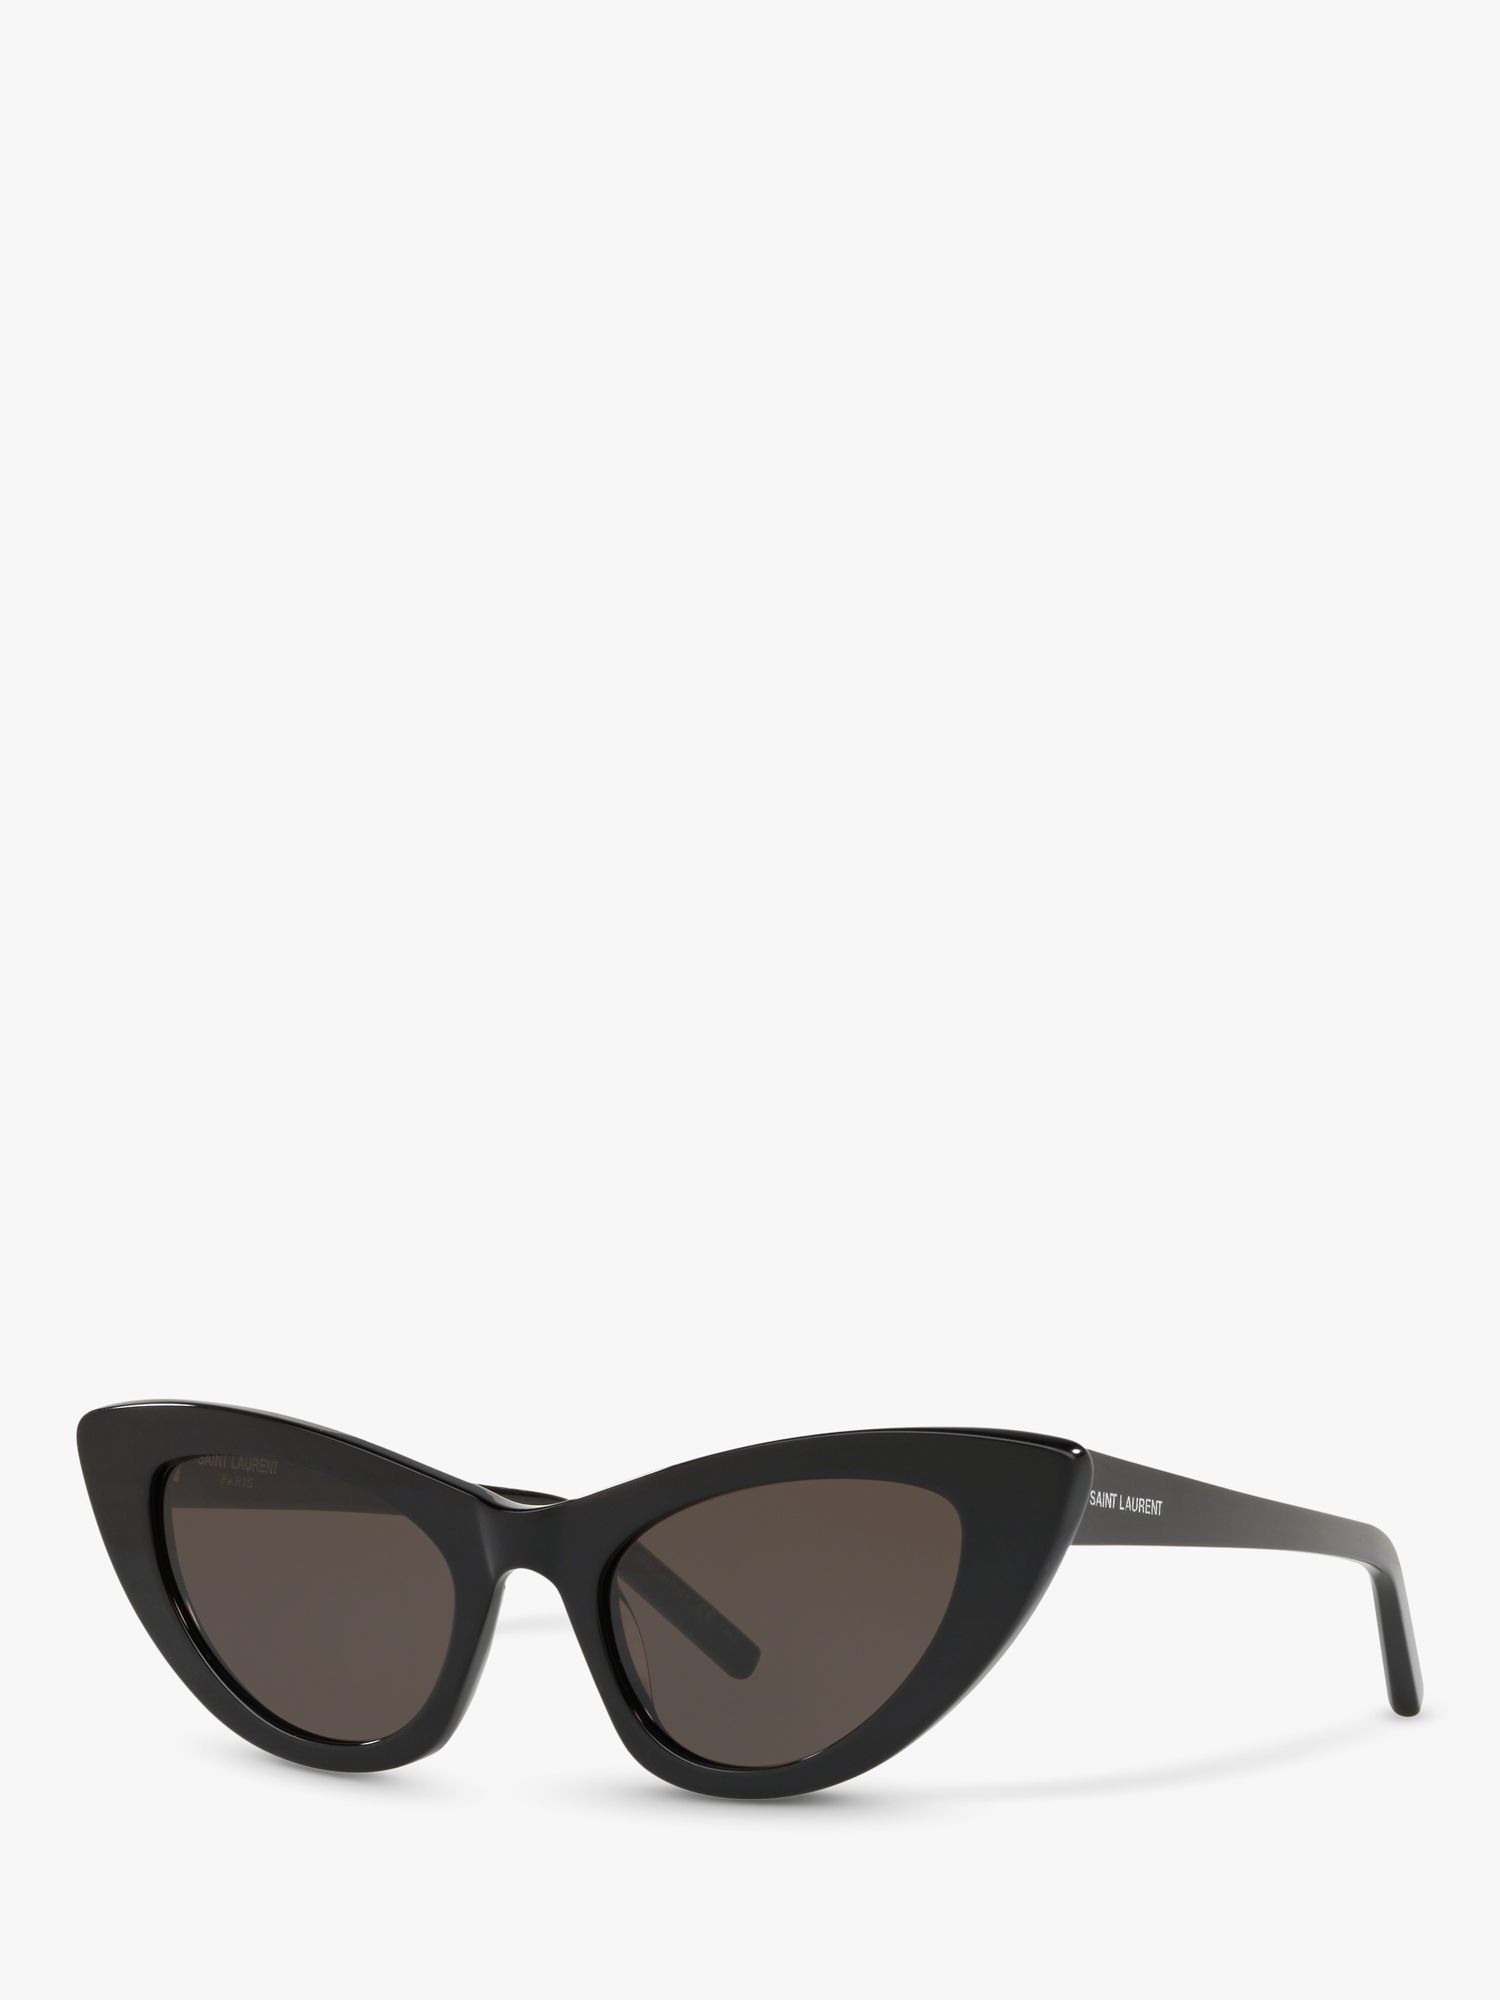 Yves Saint Laurent Women's Sunglasses for Round Face